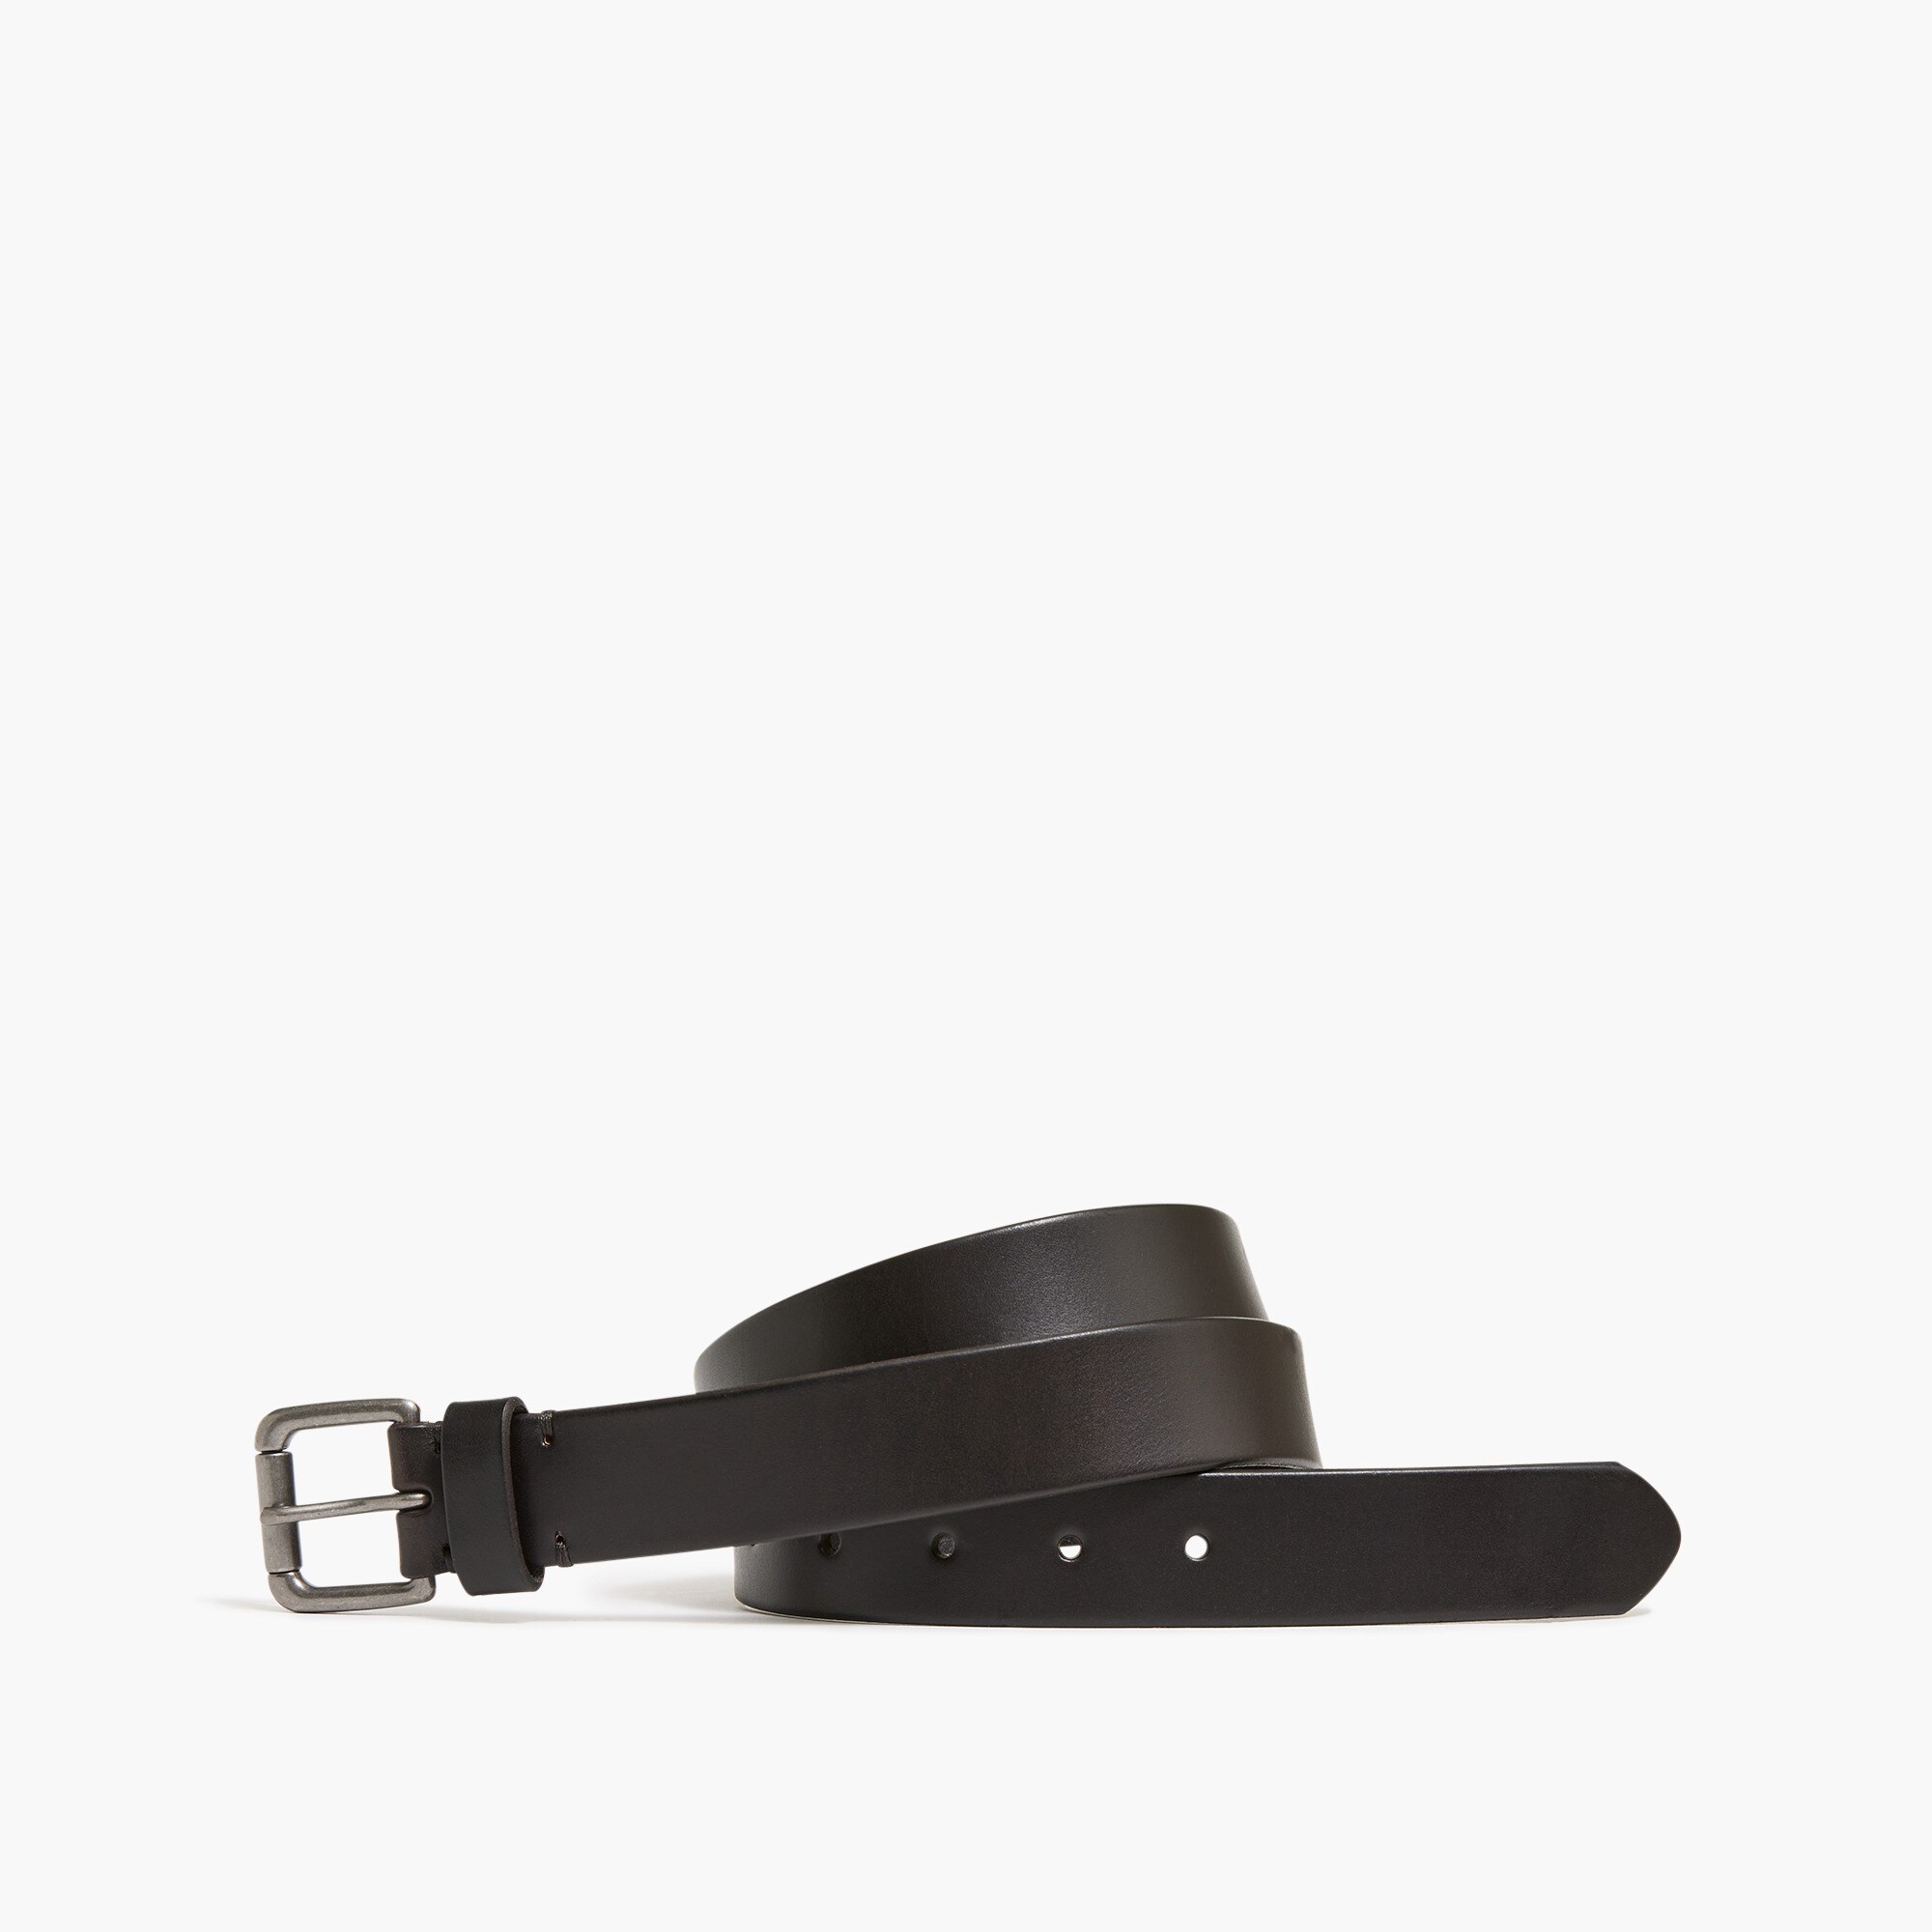  Leather roller belt